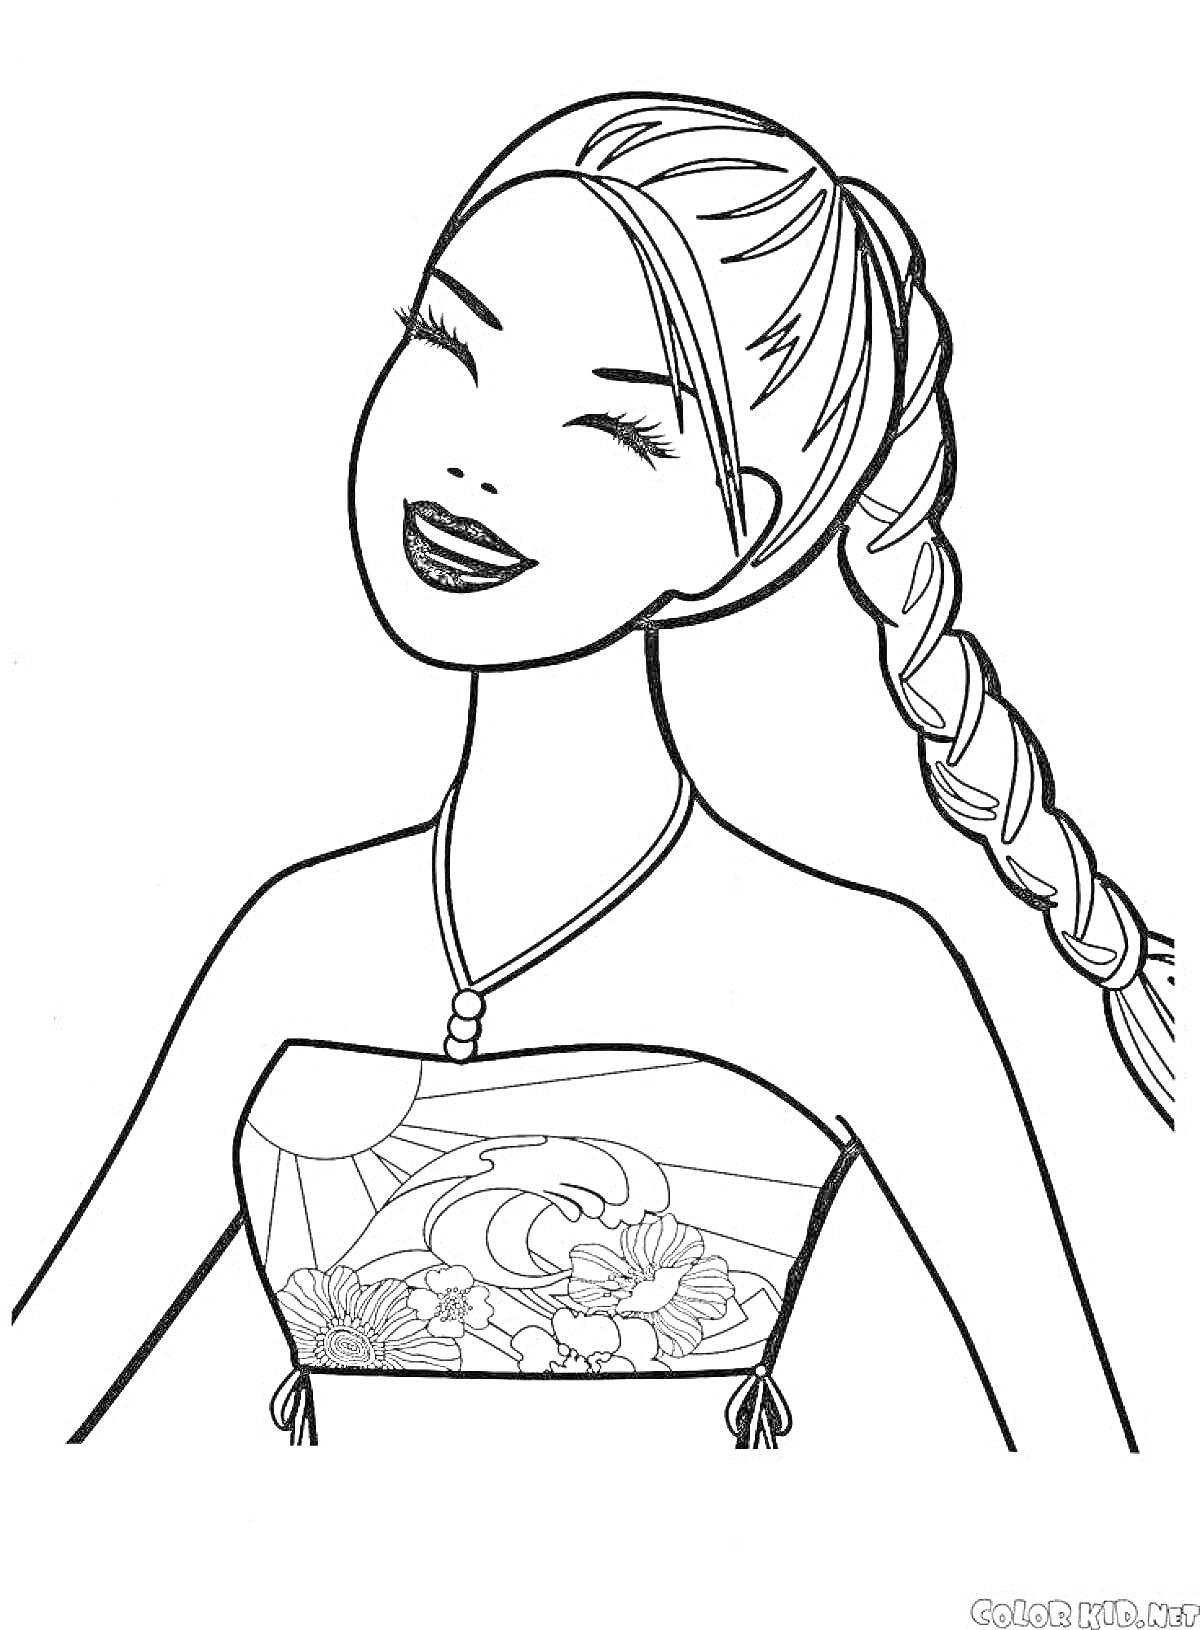 Раскраска Девочка с длинной косой и ожерельем в платье с цветочным рисунком